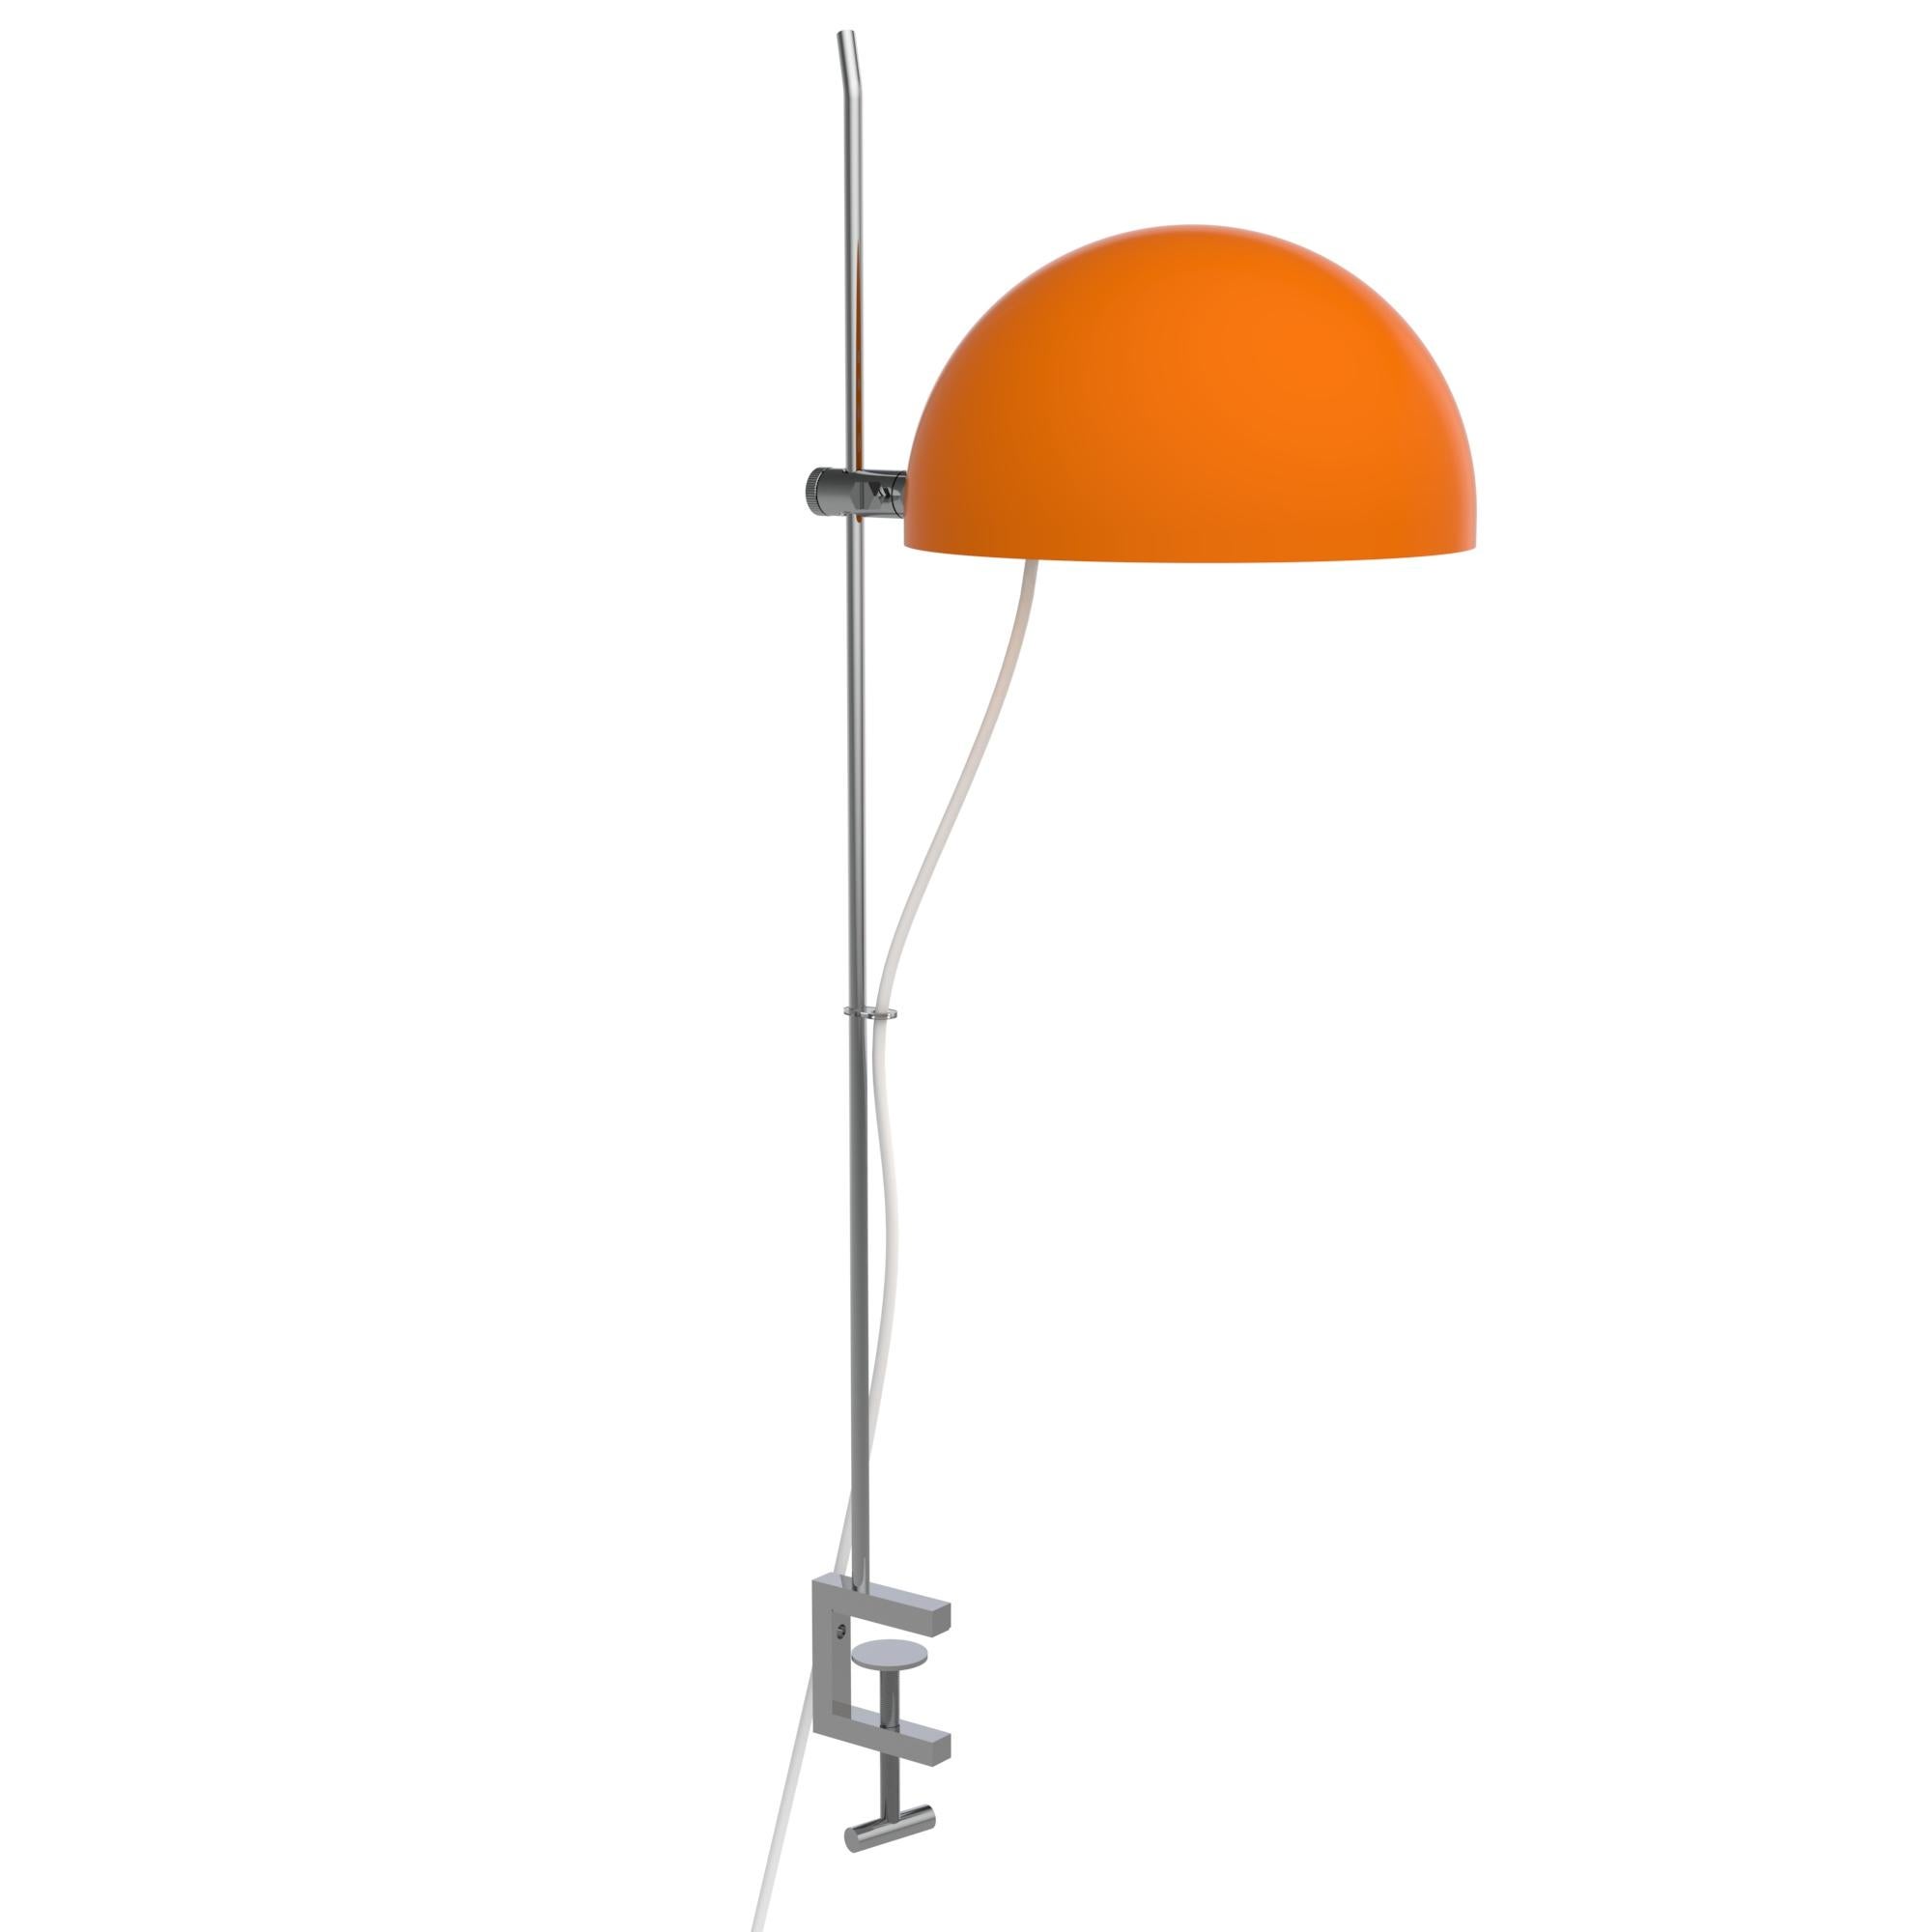 Français Alain Richard 'A22f' lampe à pampilles en orange pour Disderot en vente